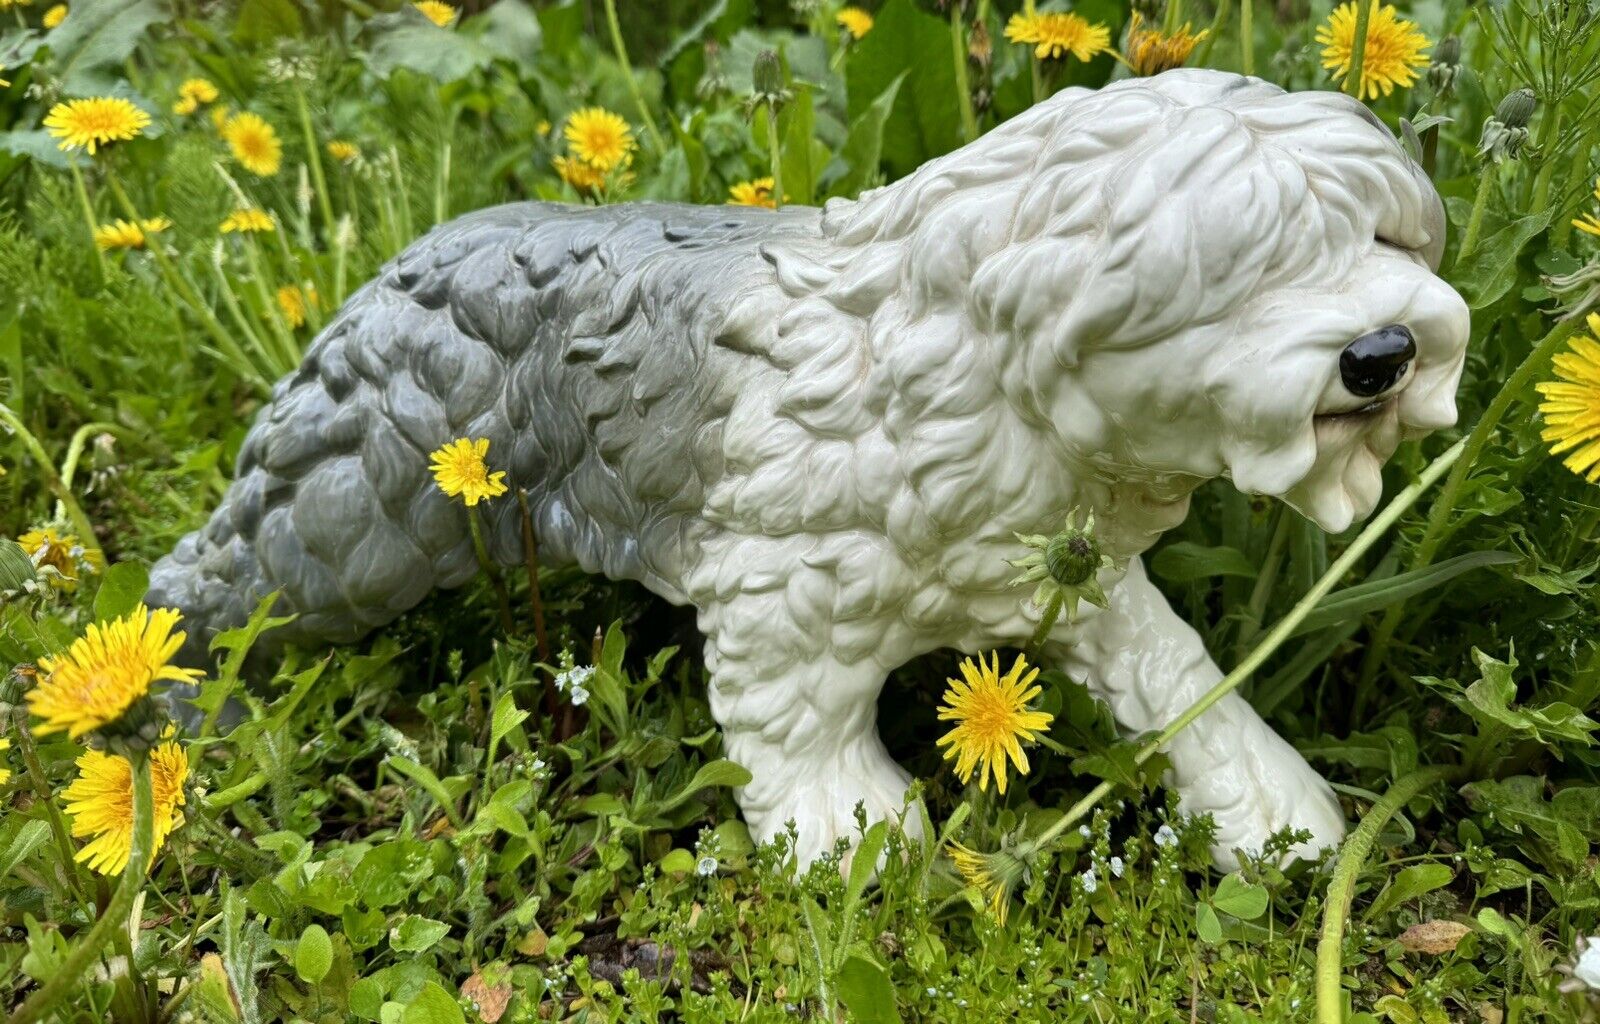 Large 19.5” Porcelain Goebel English Sheepdog - Great Condition -